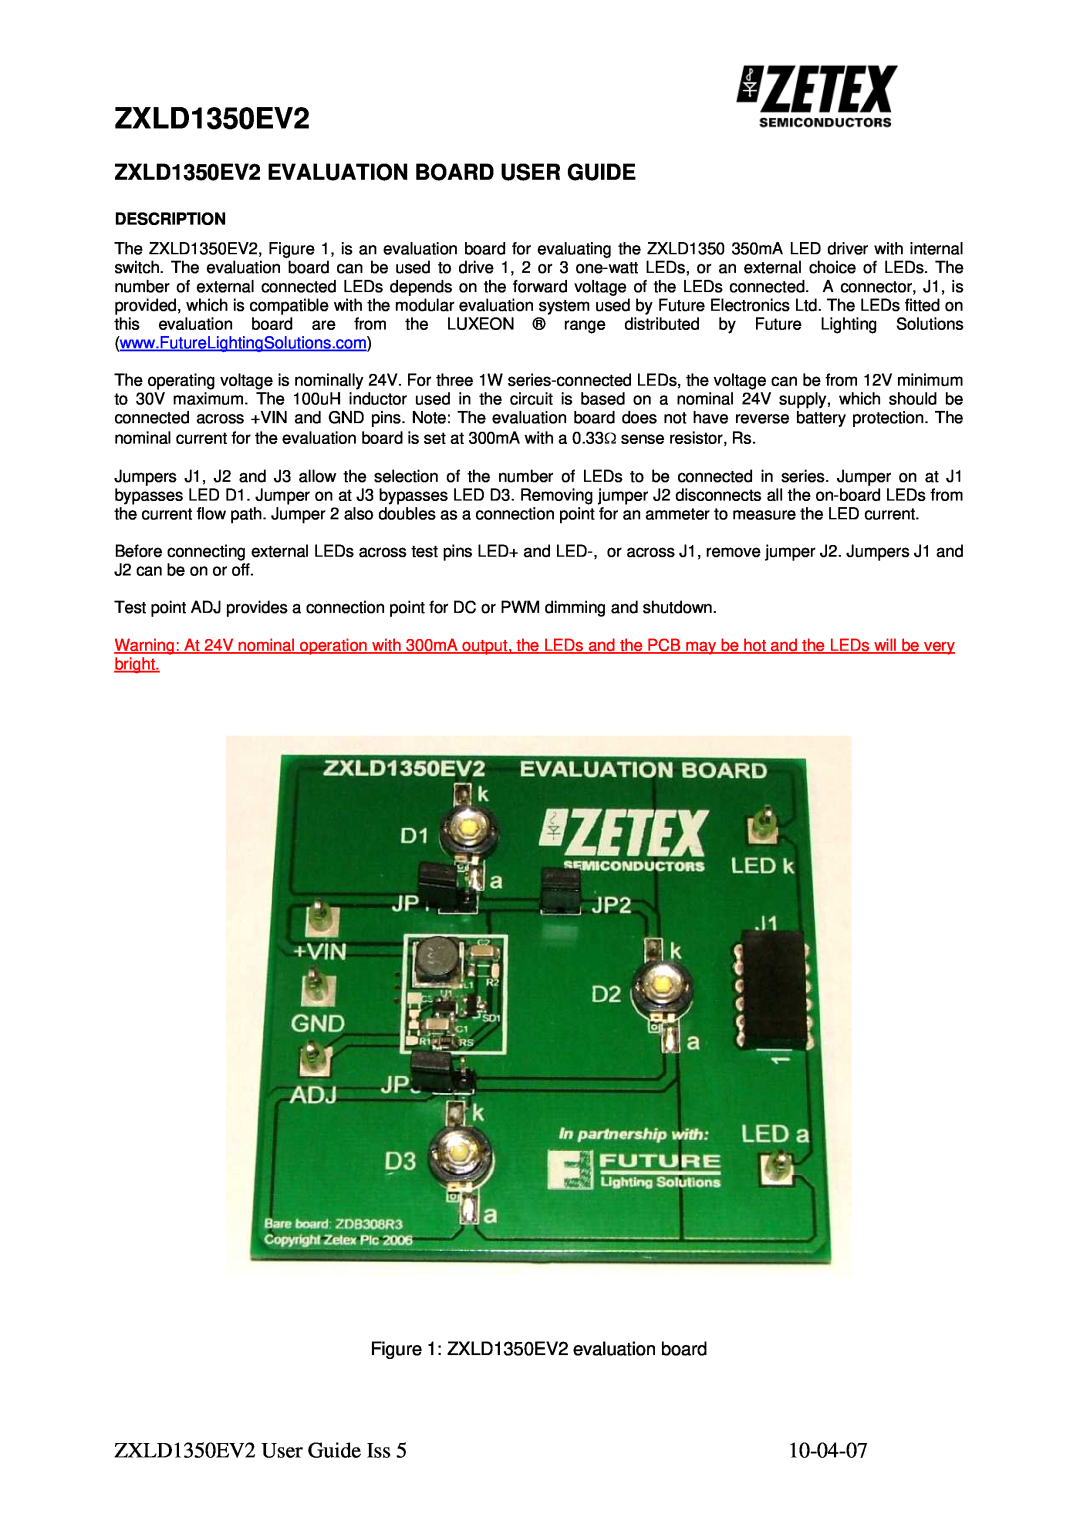 Zetex Semiconductors PLC zxld1350ev2 manual ZXLD1350EV2 EVALUATION BOARD USER GUIDE, ZXLD1350EV2 User Guide Iss 